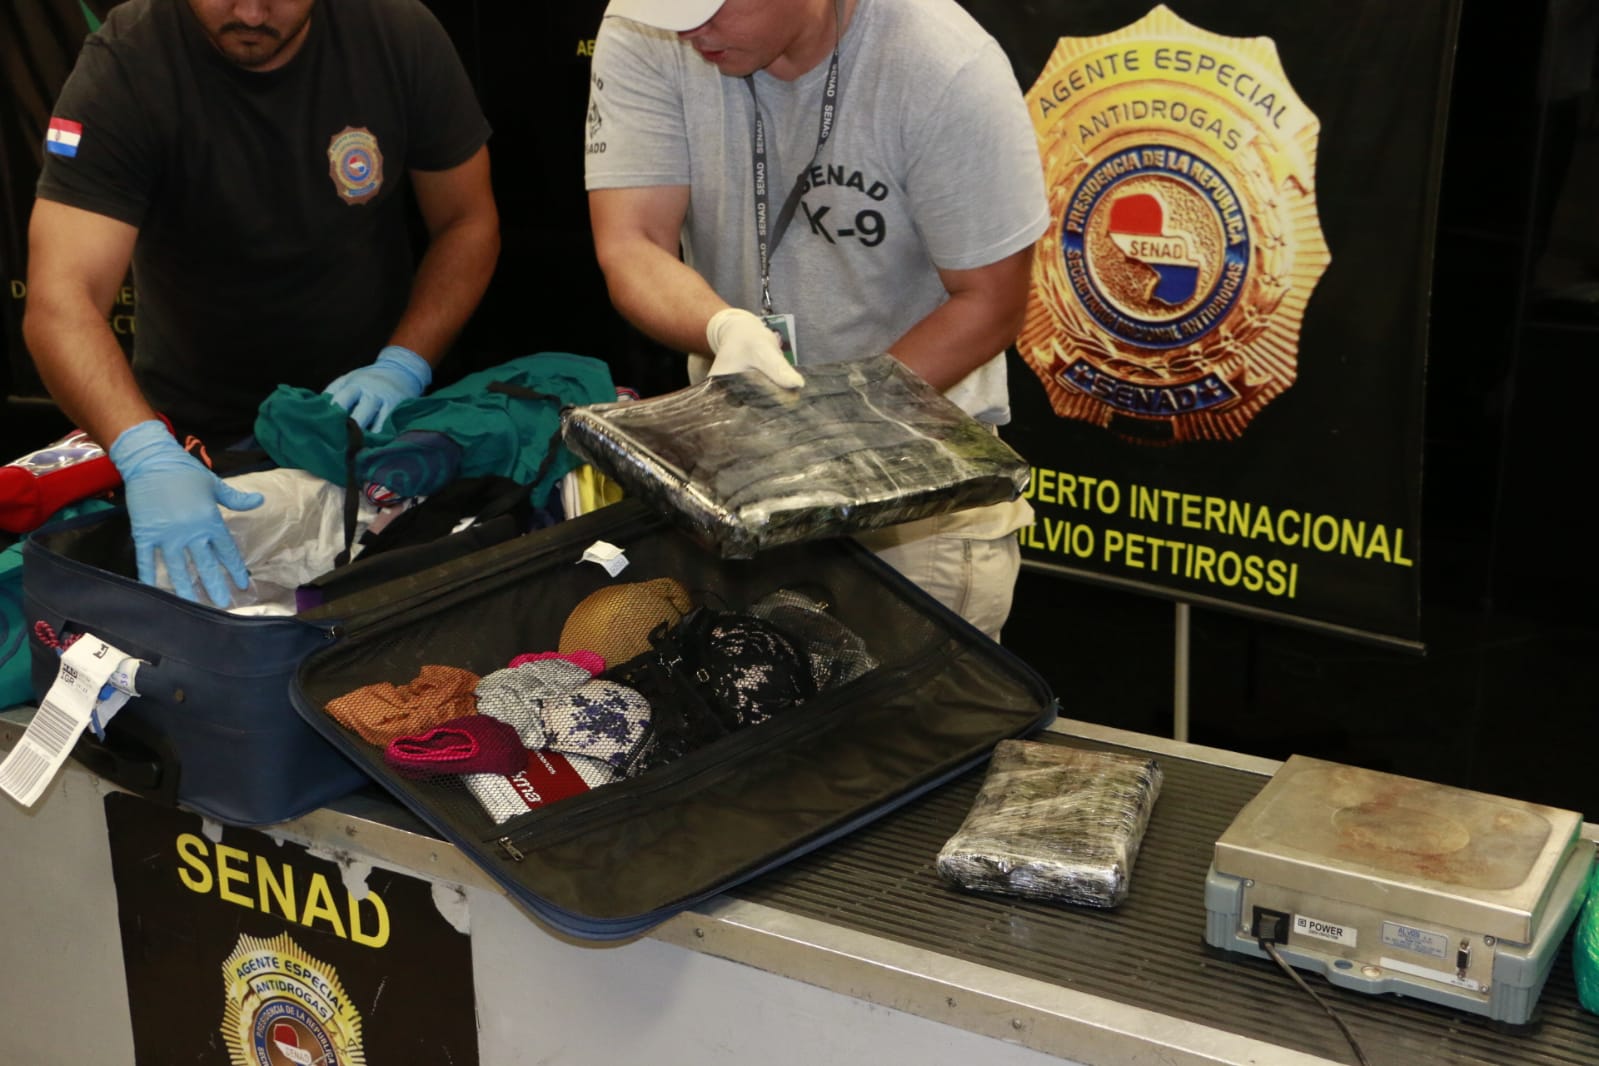 7 paquetes de cocaína fueron encontrados. Foto: Senad